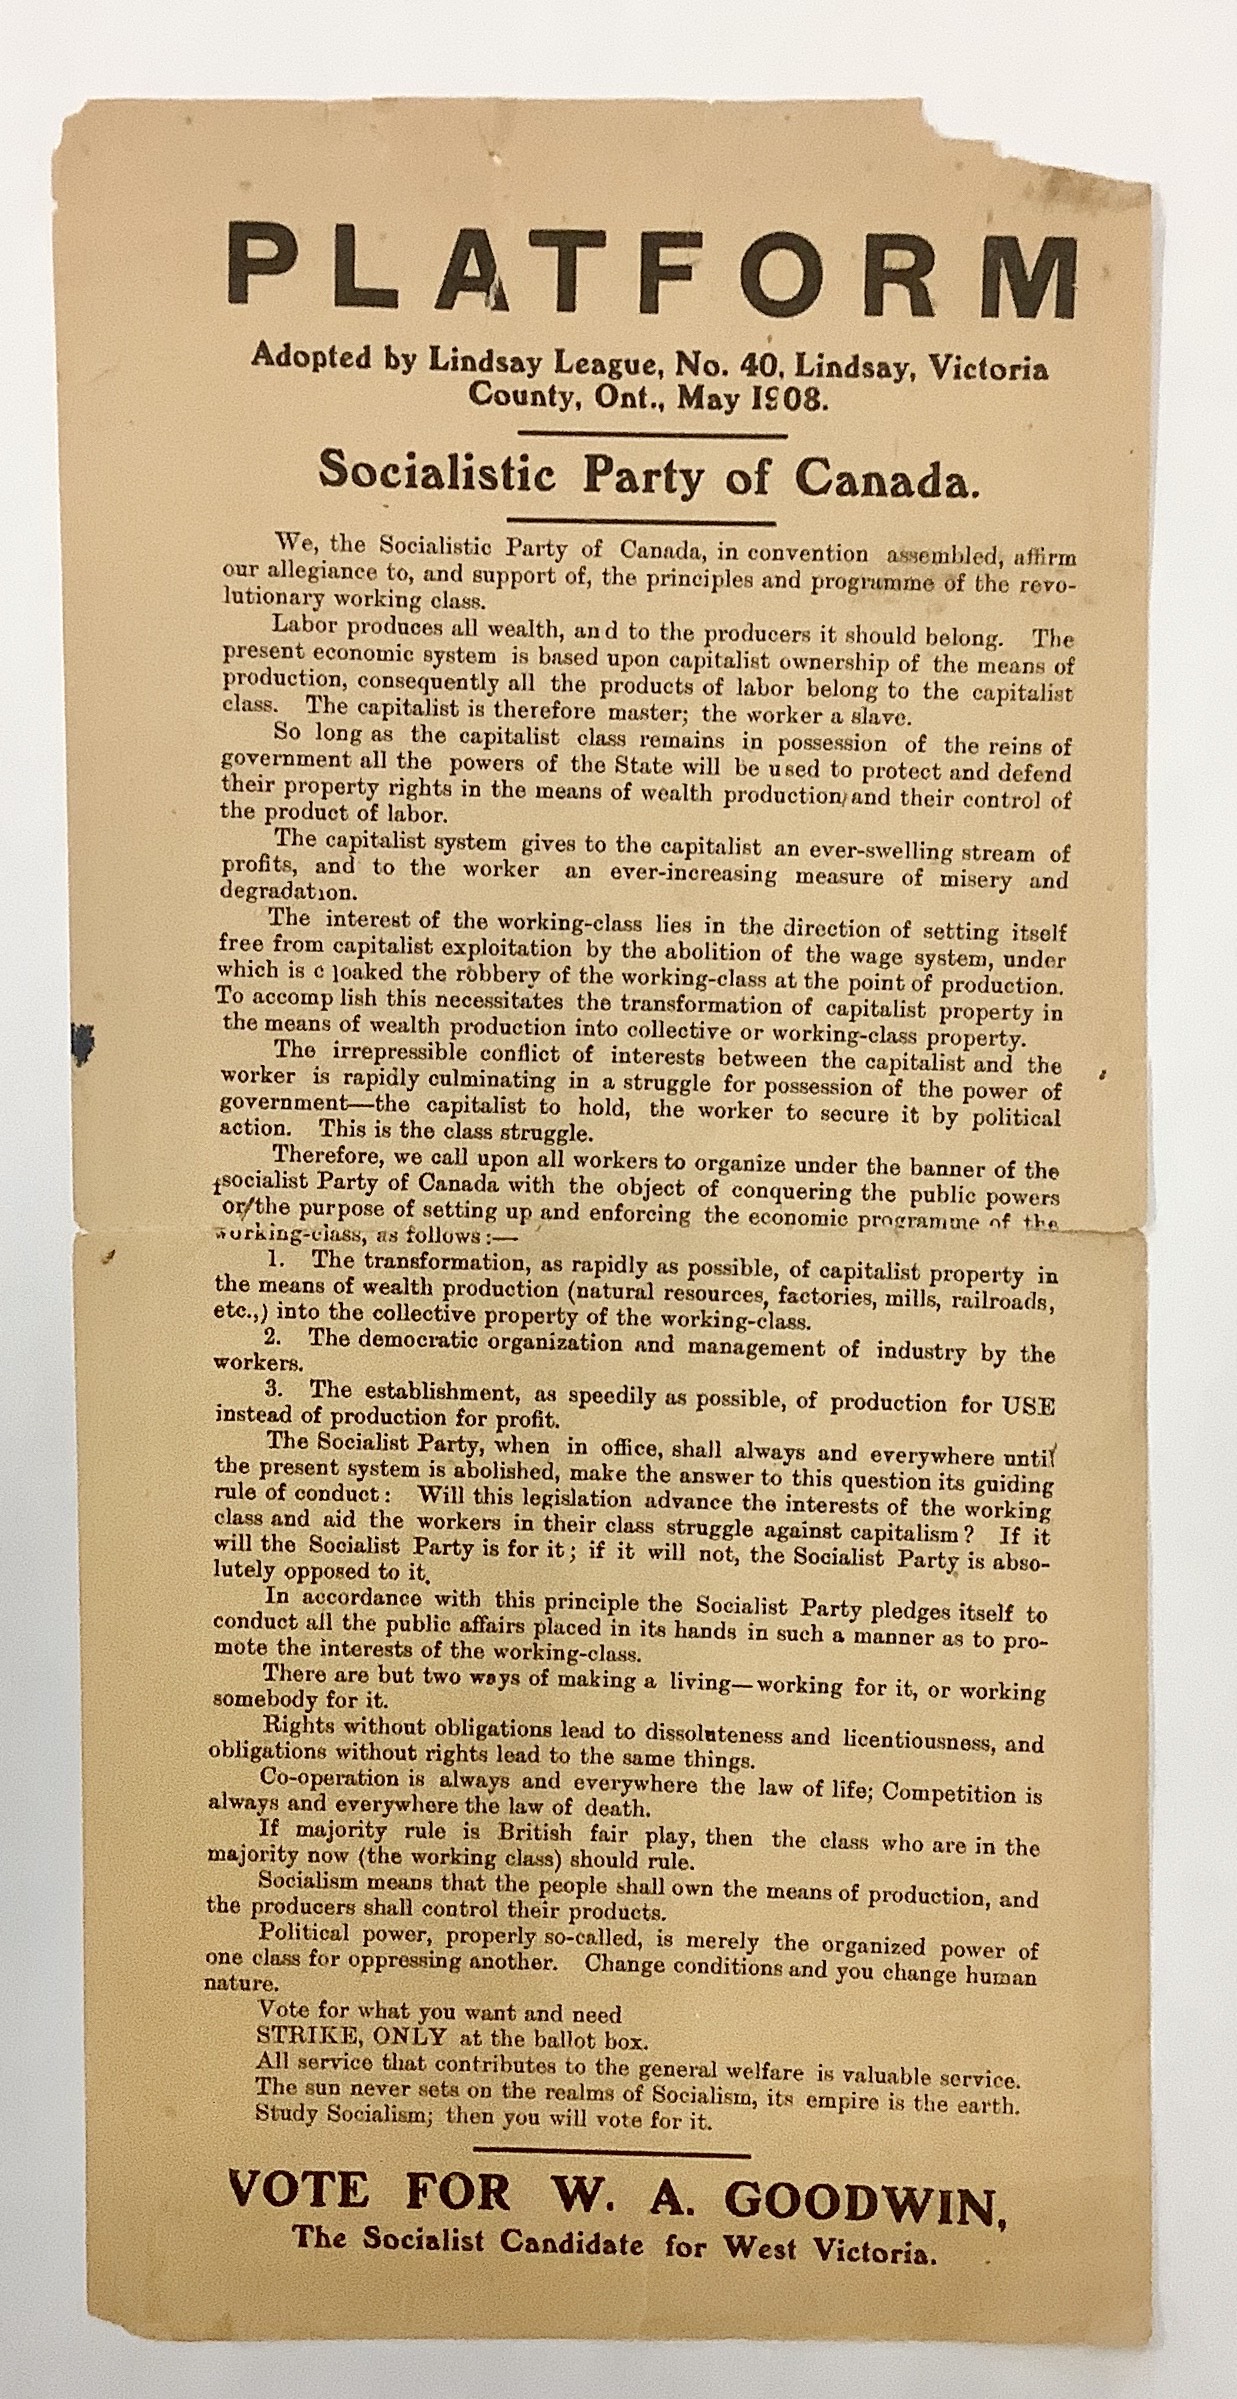 Image d’un document politique en texte noir et blanc